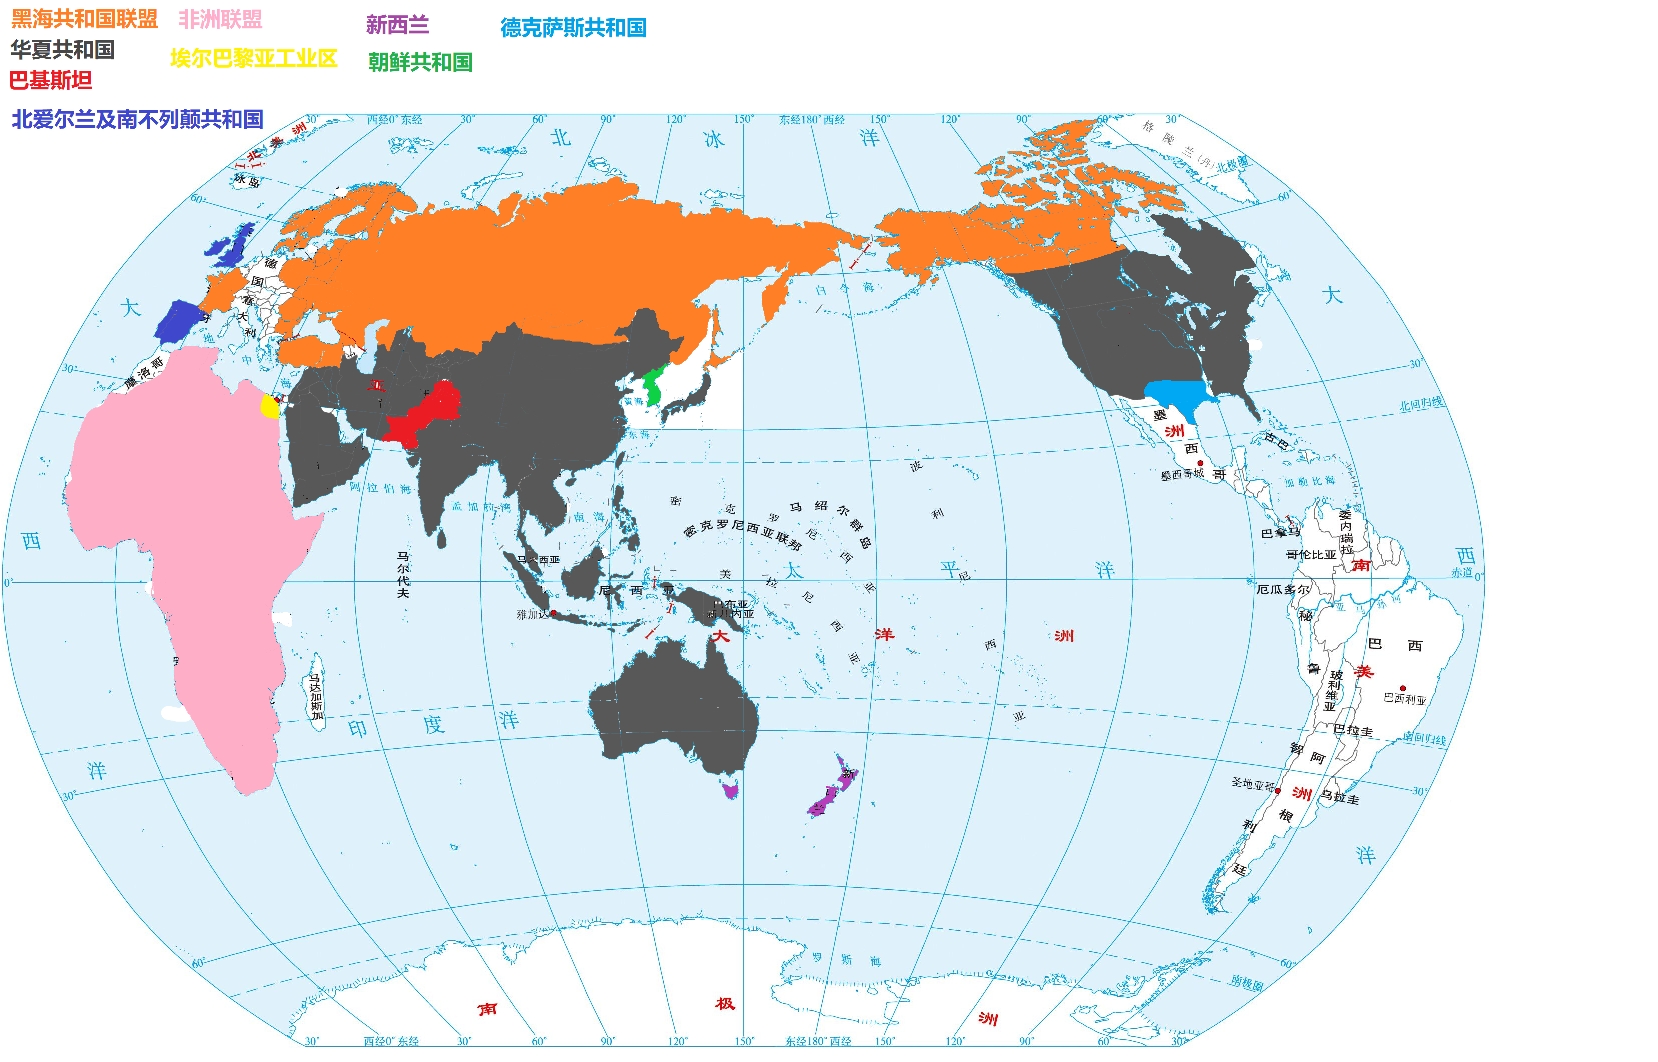 2060年世界地图阵营分布